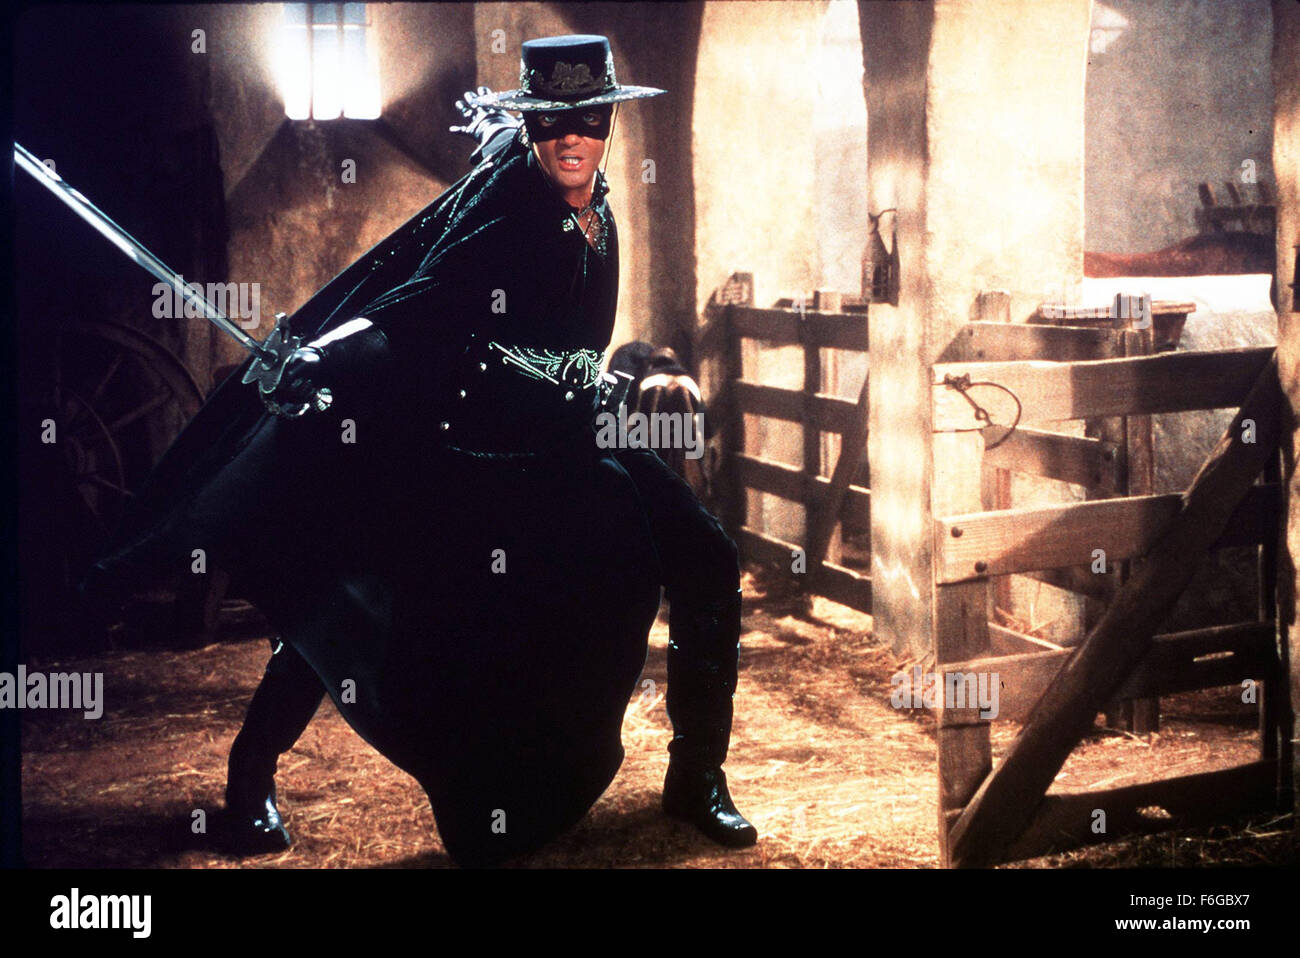 Mai 17, 1998 ; Hollywood, CA, USA ; Antonio Banderas comme Alejandro Murrieta/ Zorro dans l'action, western, comédie romantique, ''Le masque de Zorro'' réalisé par Martin Campbell. Banque D'Images